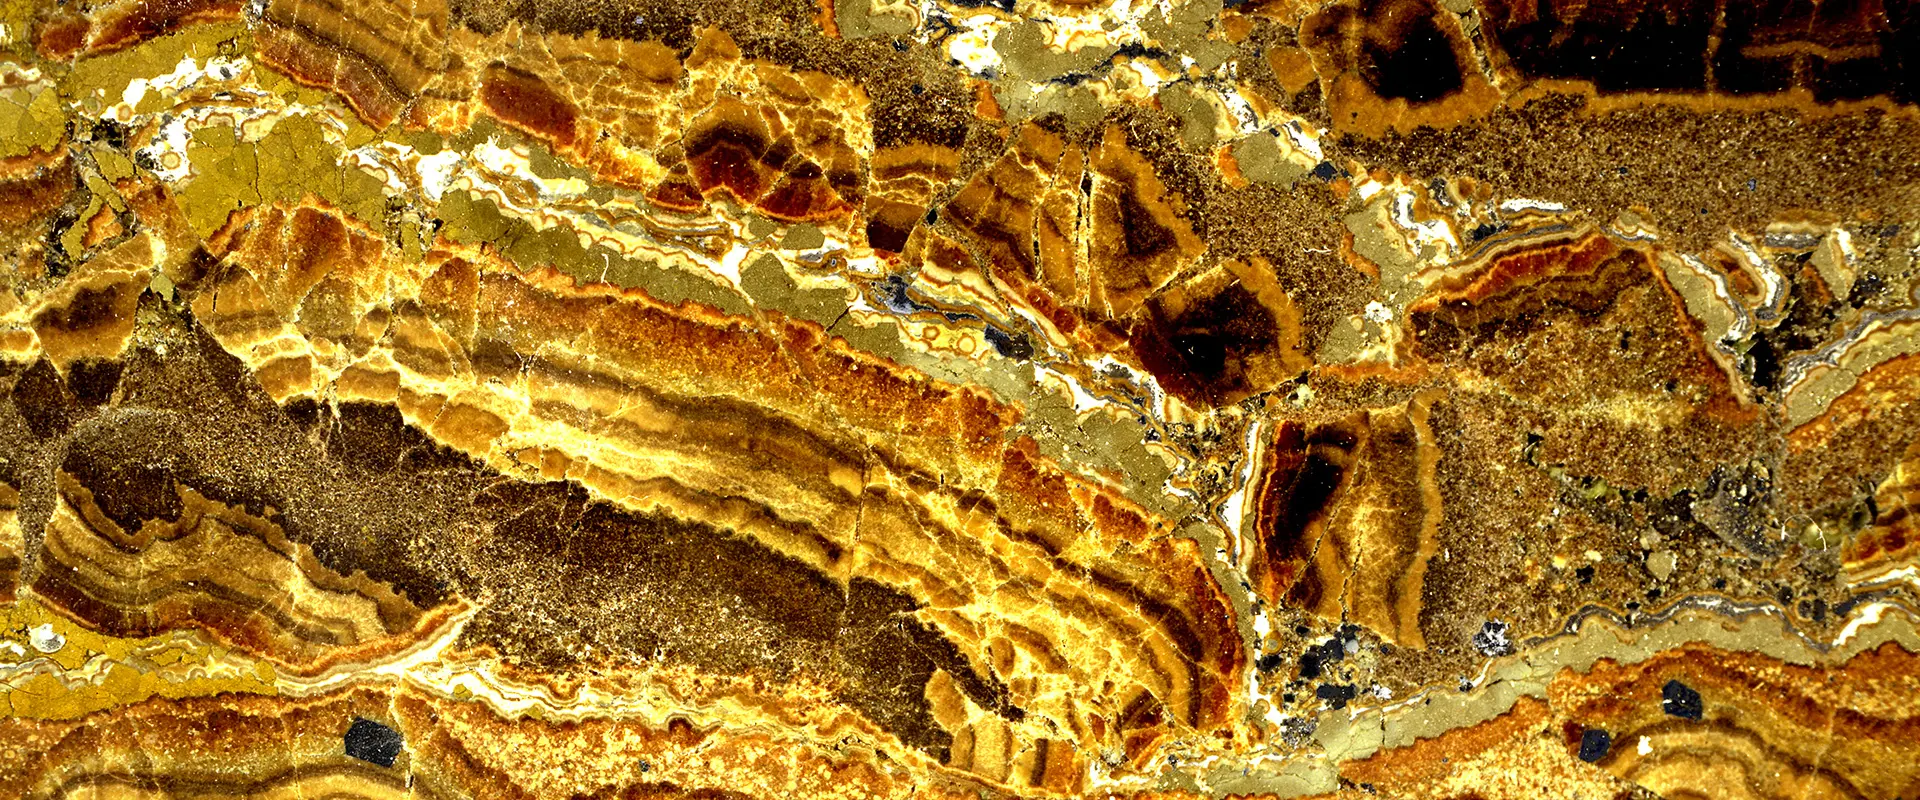 Echantillon poli de minerai rubanné de zinc, Gard